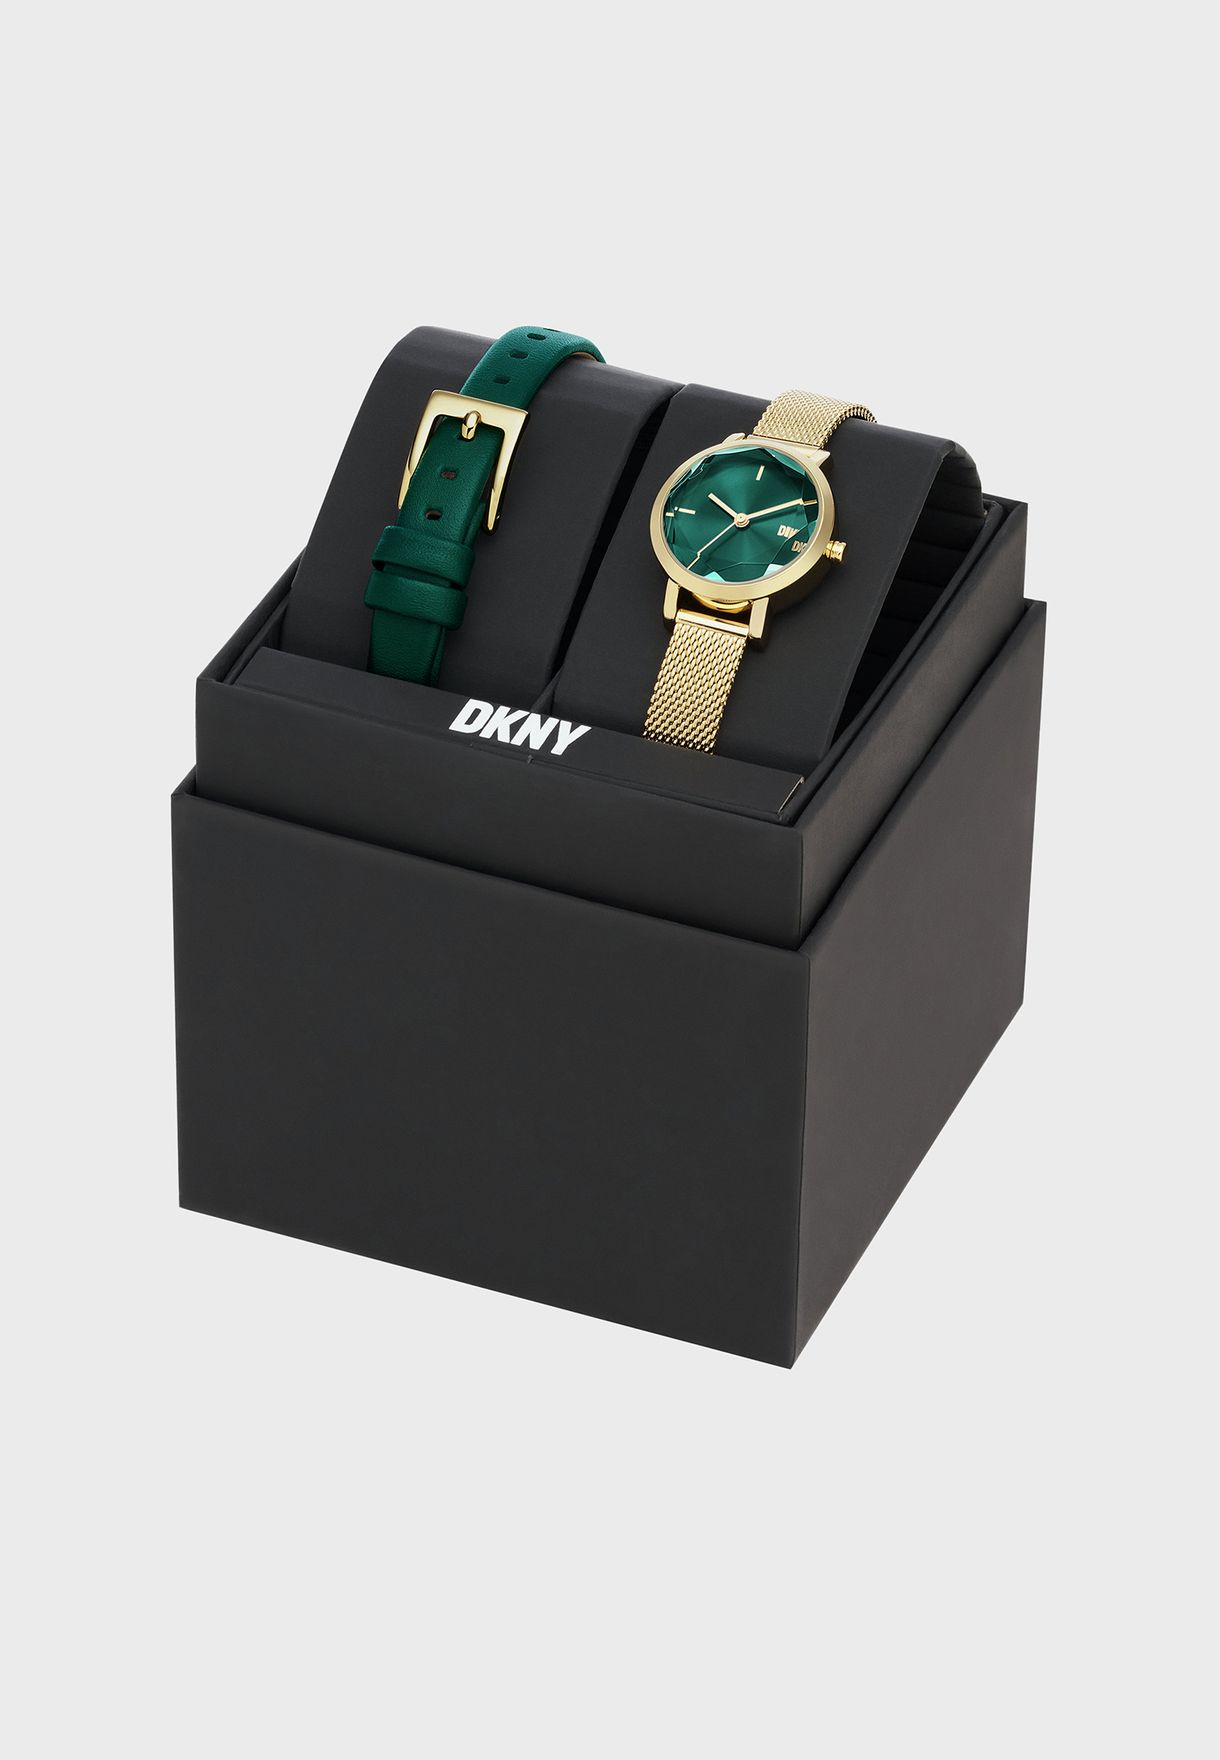 Soho Analog Watch & Emerald Tone Leather Strap Set